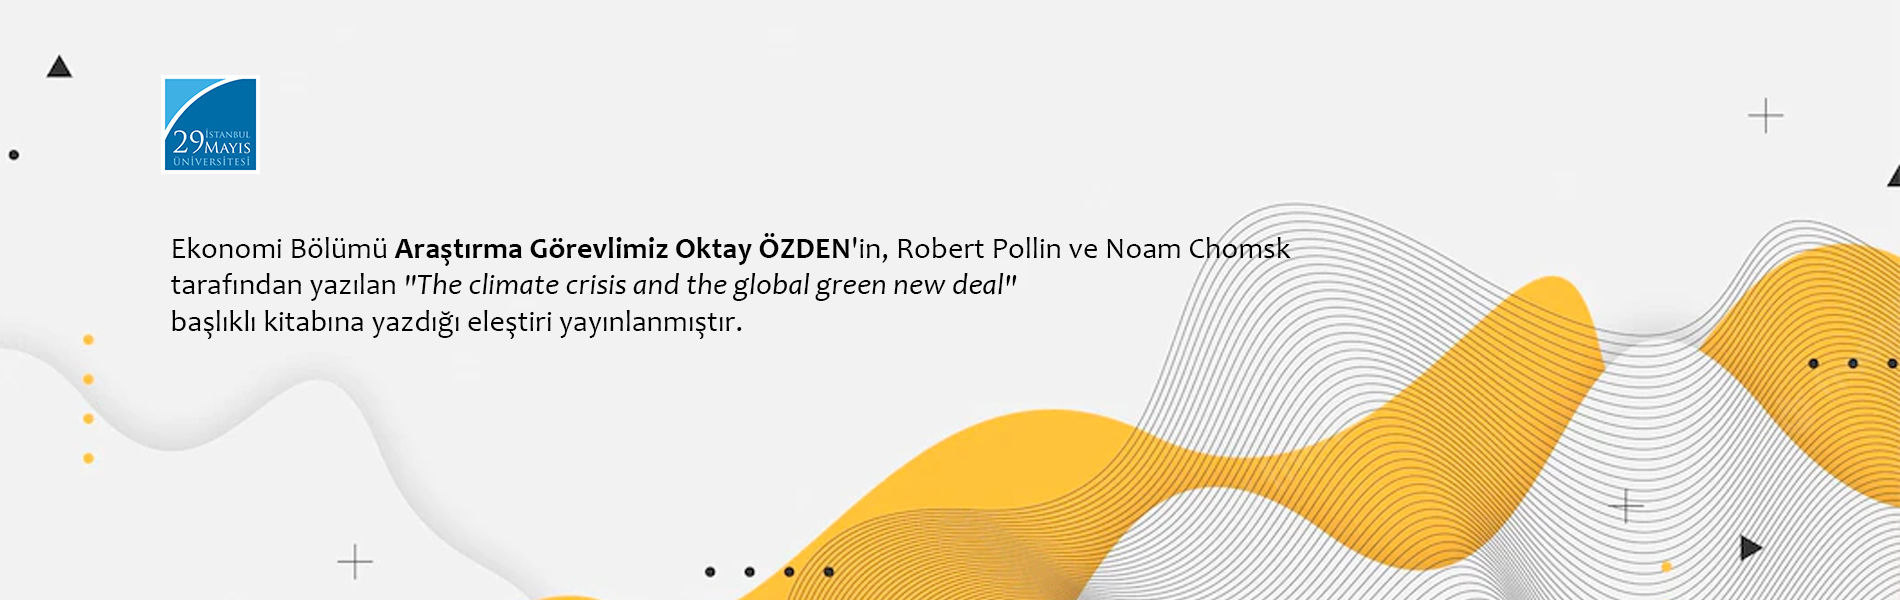 Araştırma Görevlimiz Oktay Özden'in, "The Climate Crisis and the Global Green New Deal" Başlıklı Kitaba Yazdığı Eleştiri Yayınlanmıştır